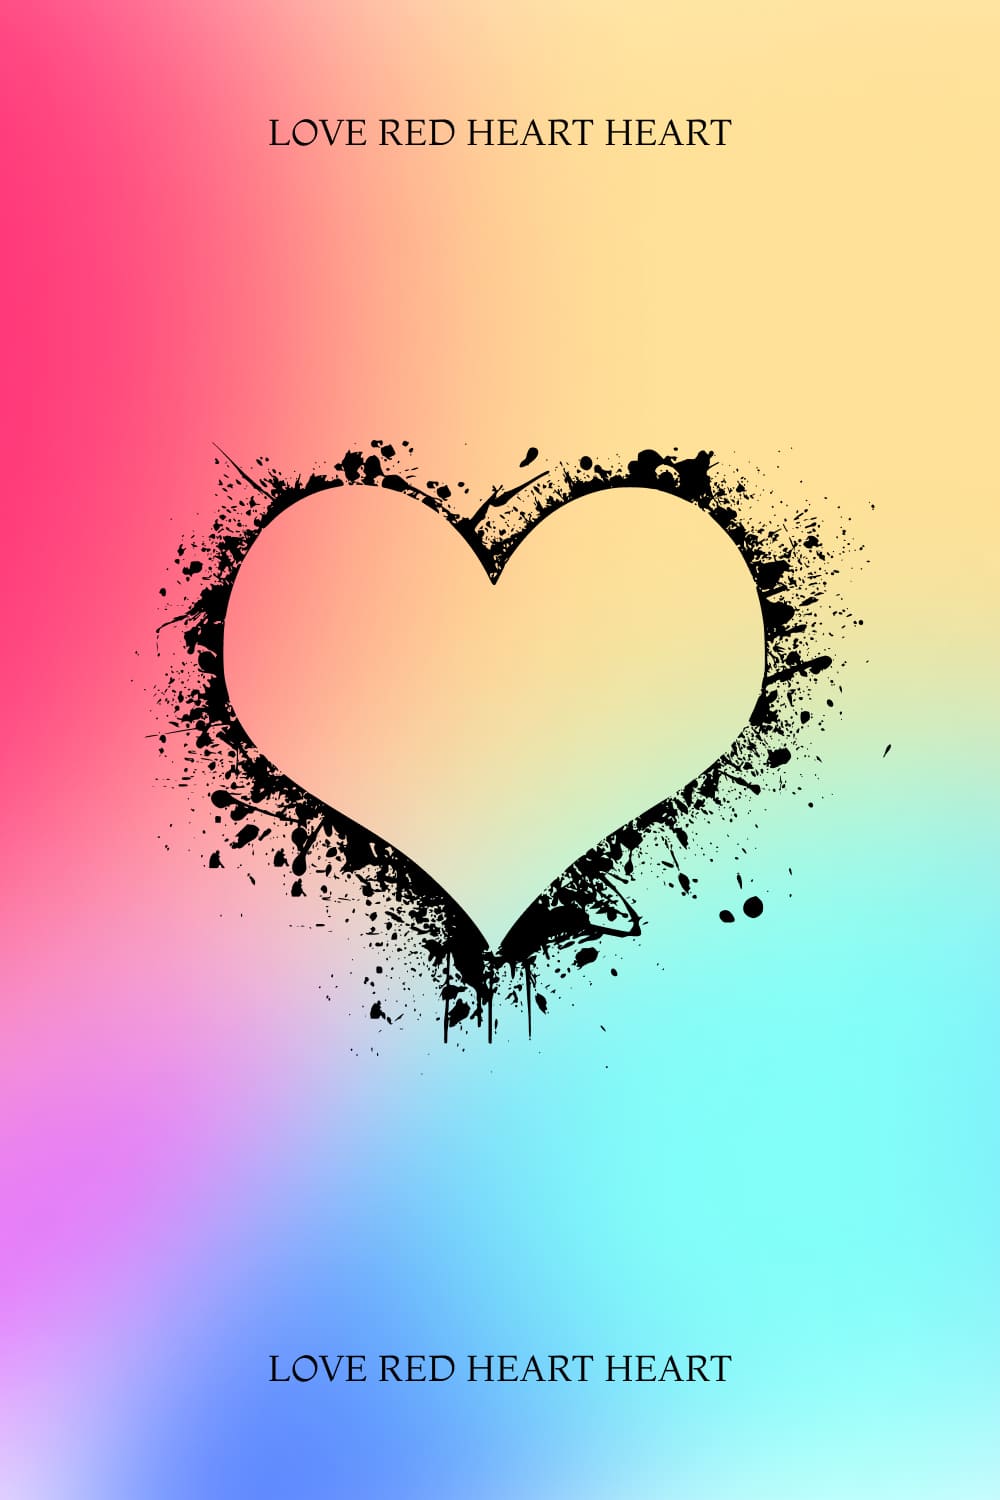 Love Red Heart Heart - Pinterest Image.